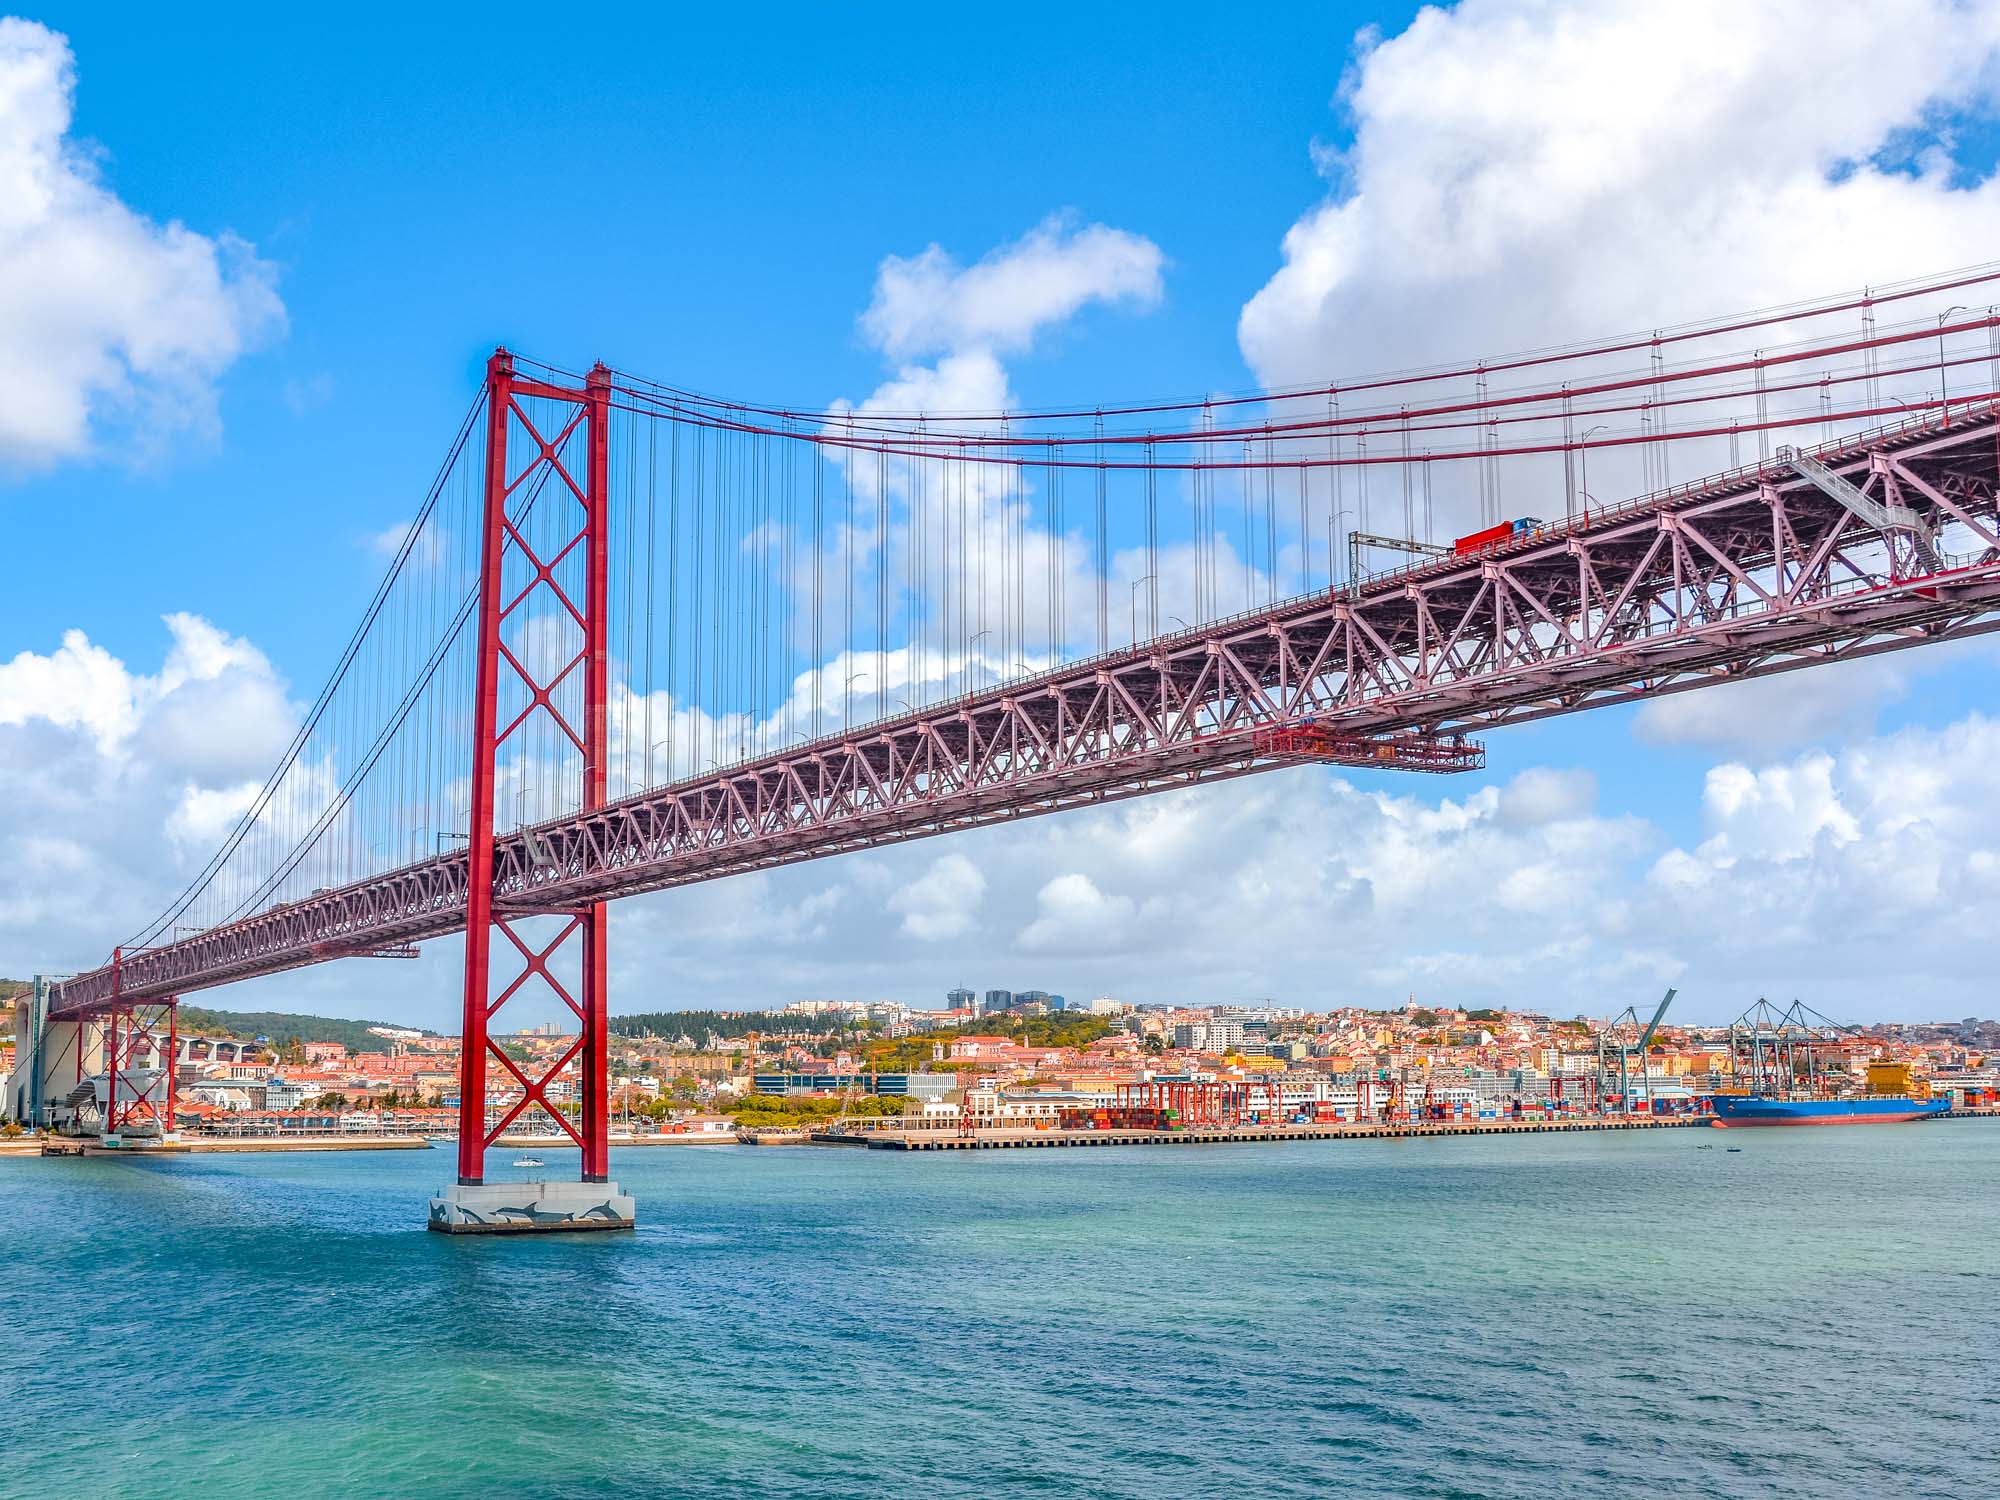 Peajes en Portugal, Puente 25 de abril Lisboa